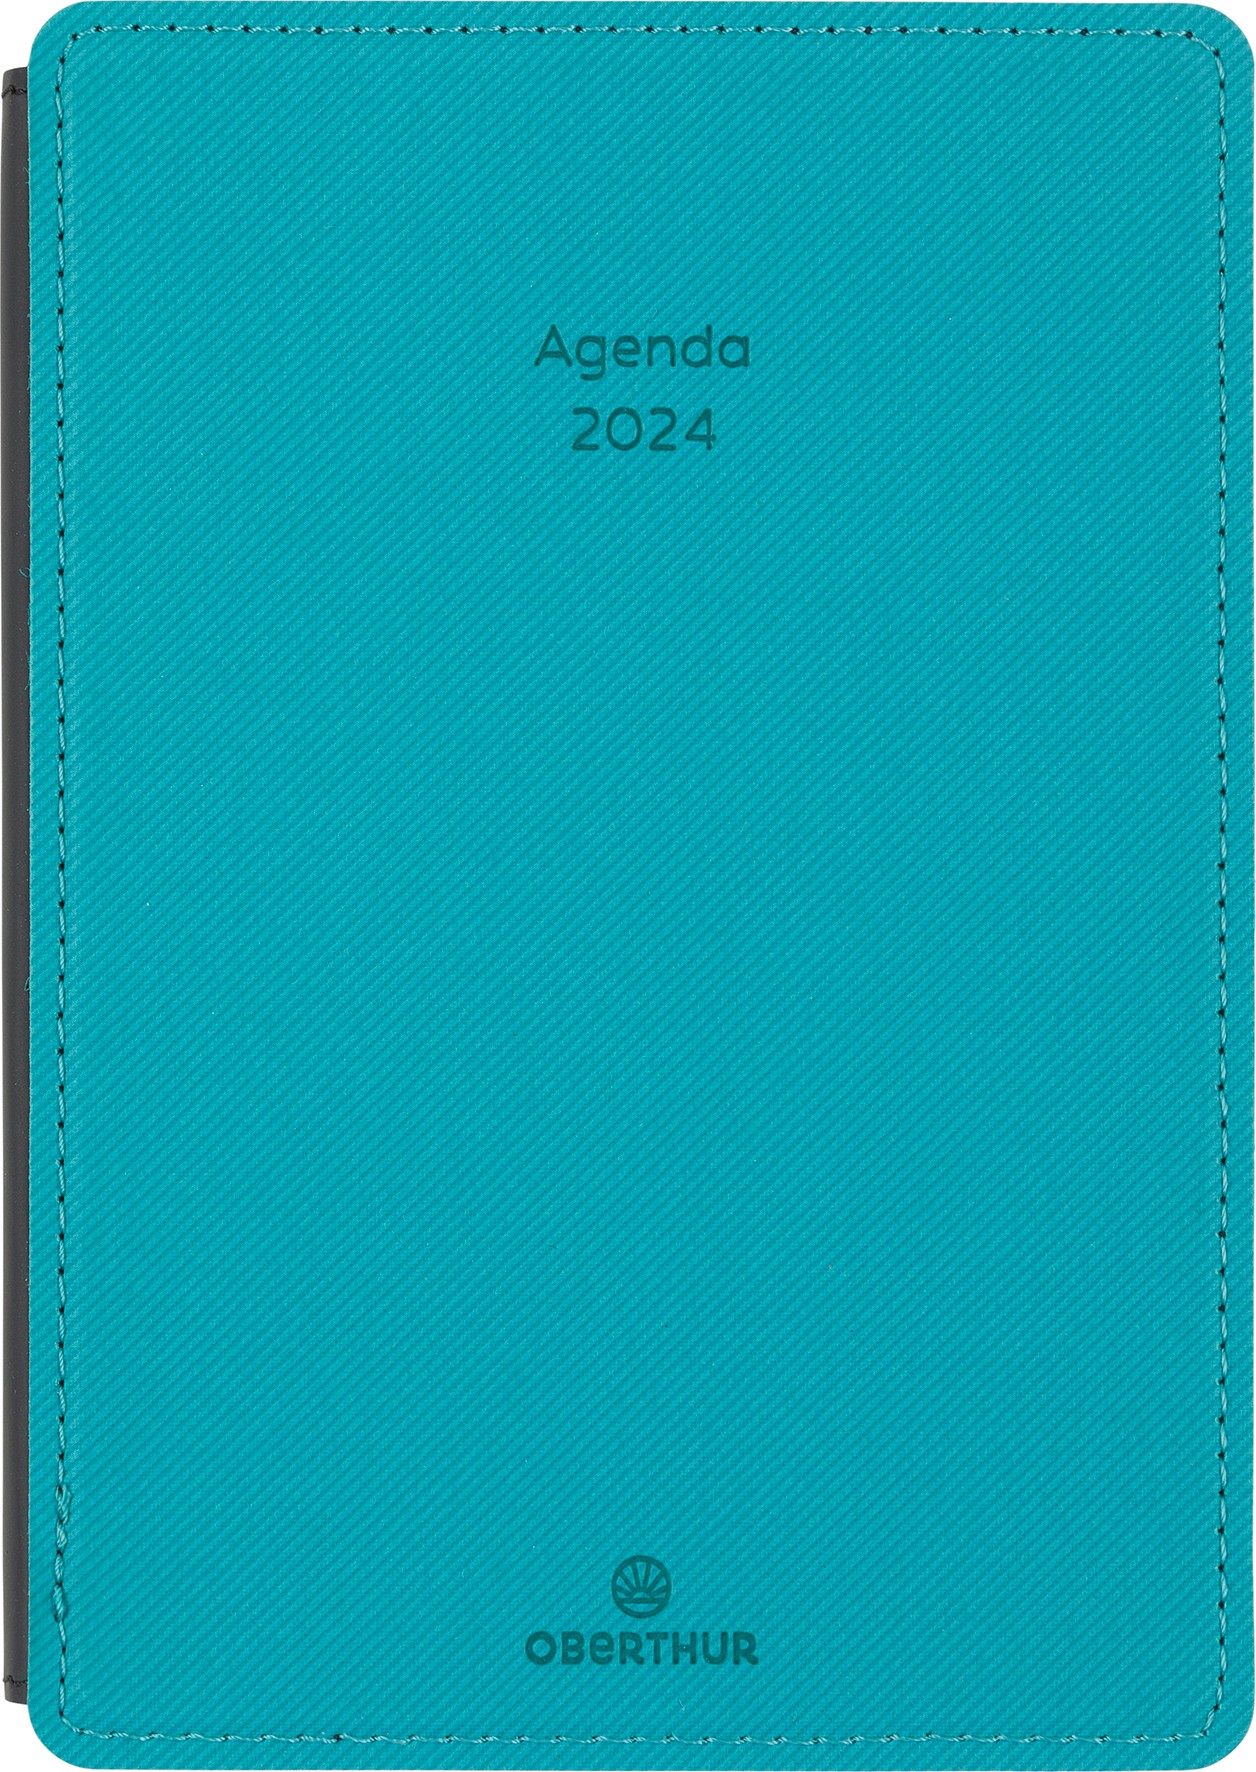 Agenda Stan - 1 semaine sur 2 pages - 11,5 x 16,5 cm - bleu canard -  Oberthur